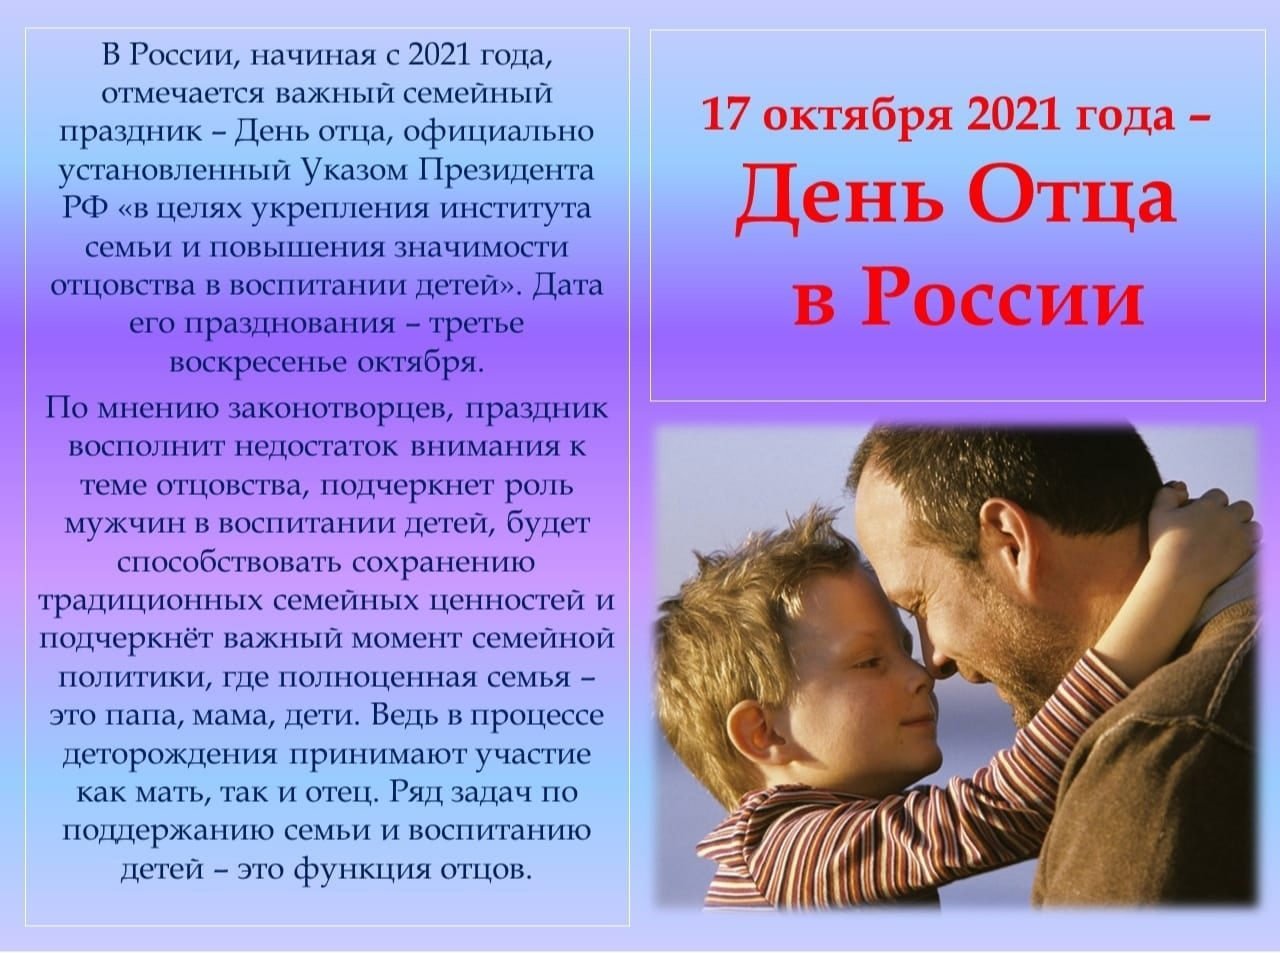 Дунь отца. С днем отца. С днём отца поздравления. День отца в России. Праздник день отца в России.